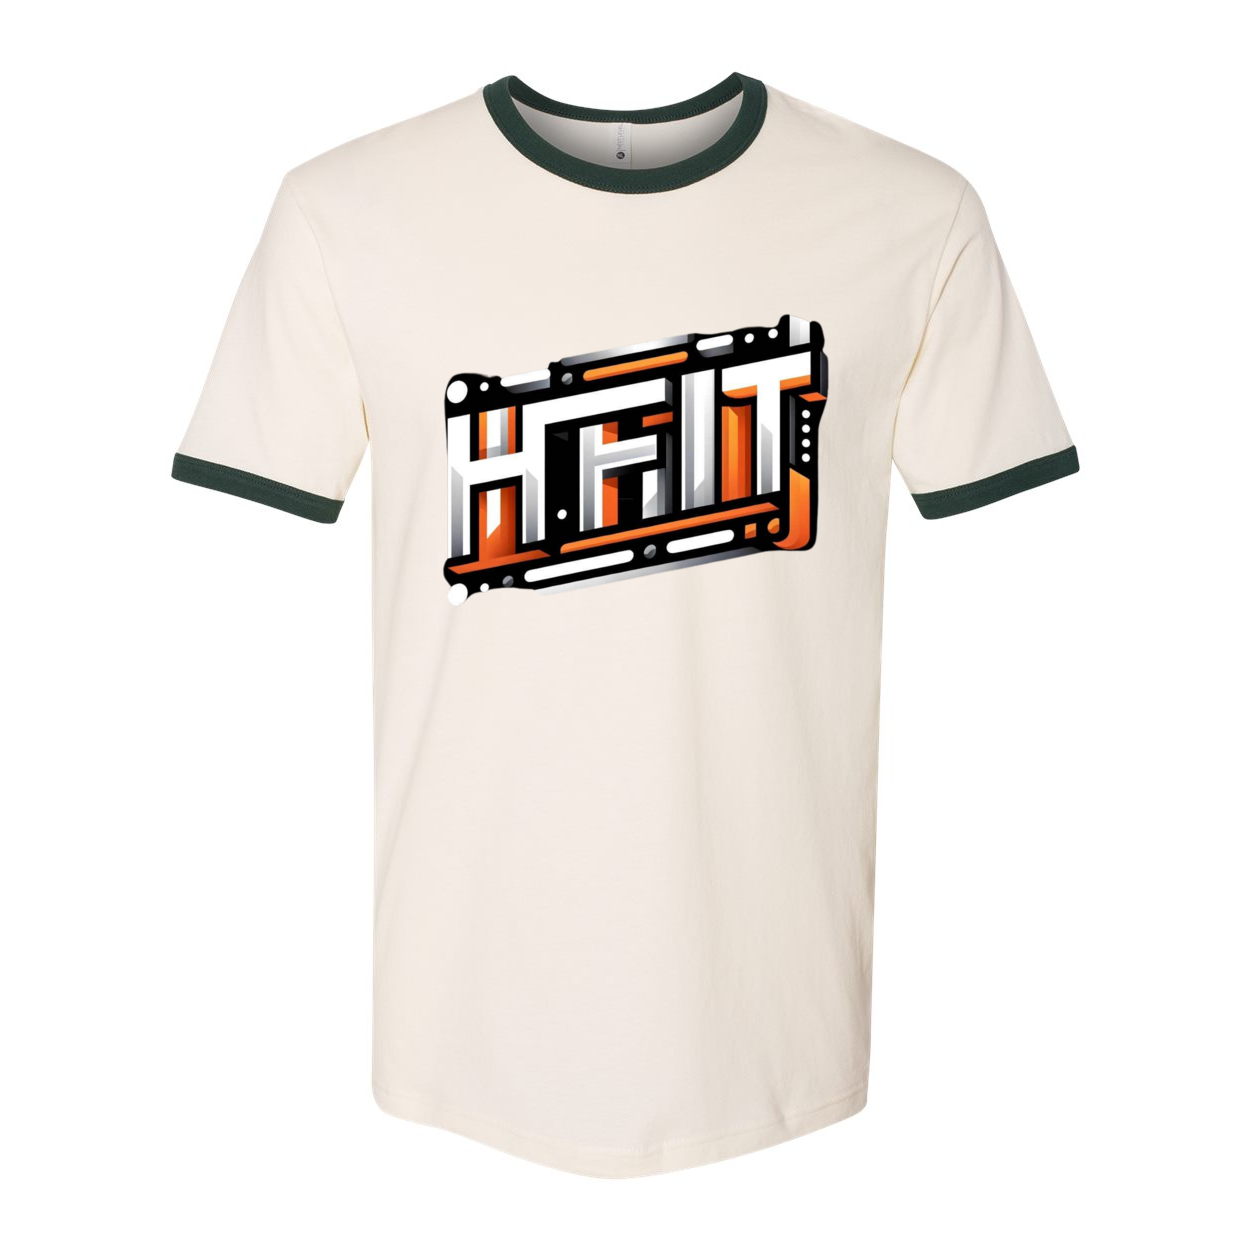 HFIT Next Level Unisex Cotton Ringer T-Shirt Top